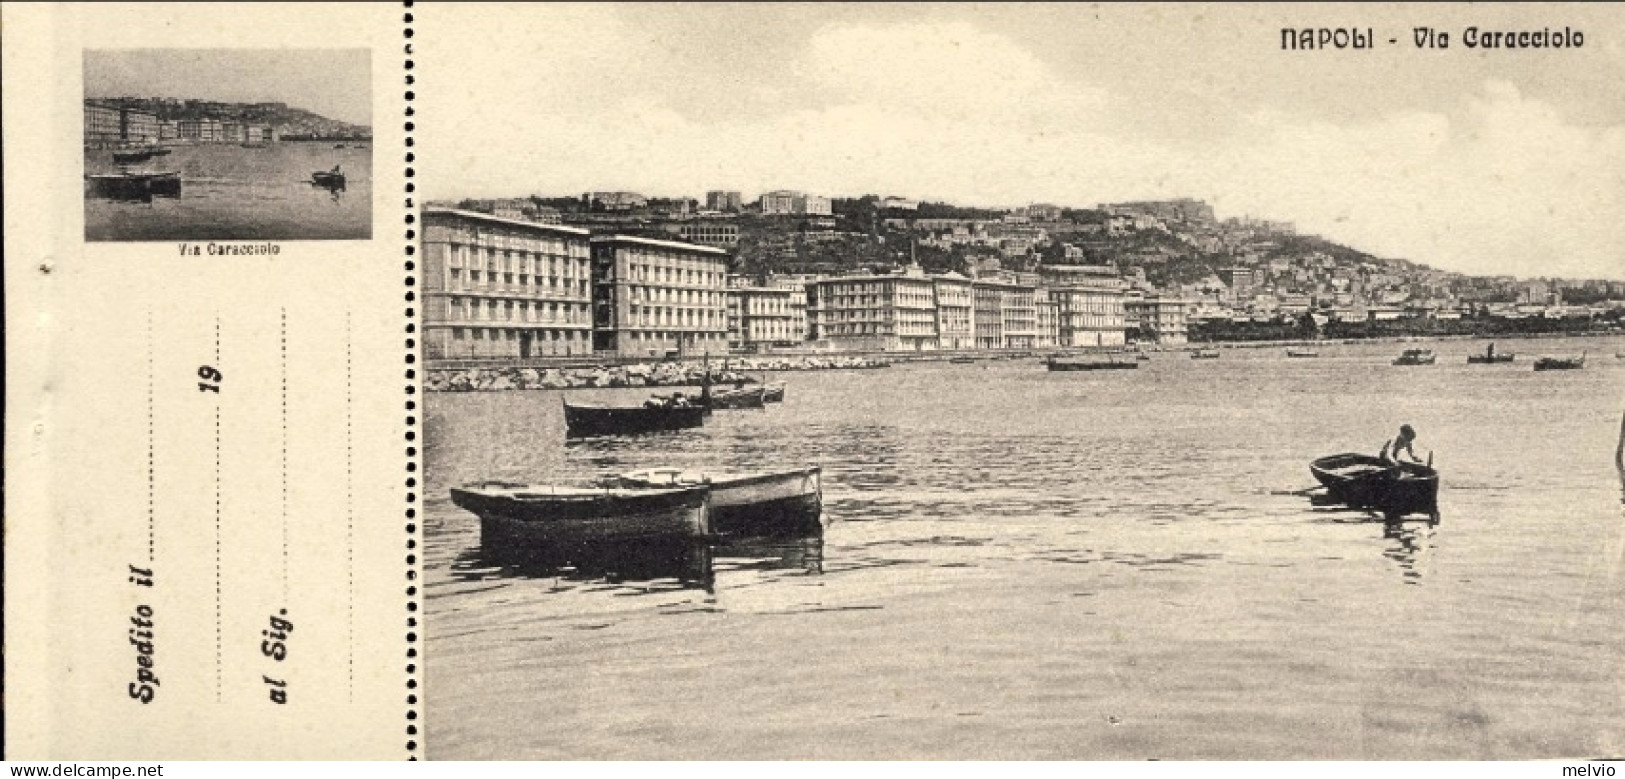 1912-"Napoli-Via Caracciolo" Cartolina Con Appendice Memorandum - Napoli (Naples)